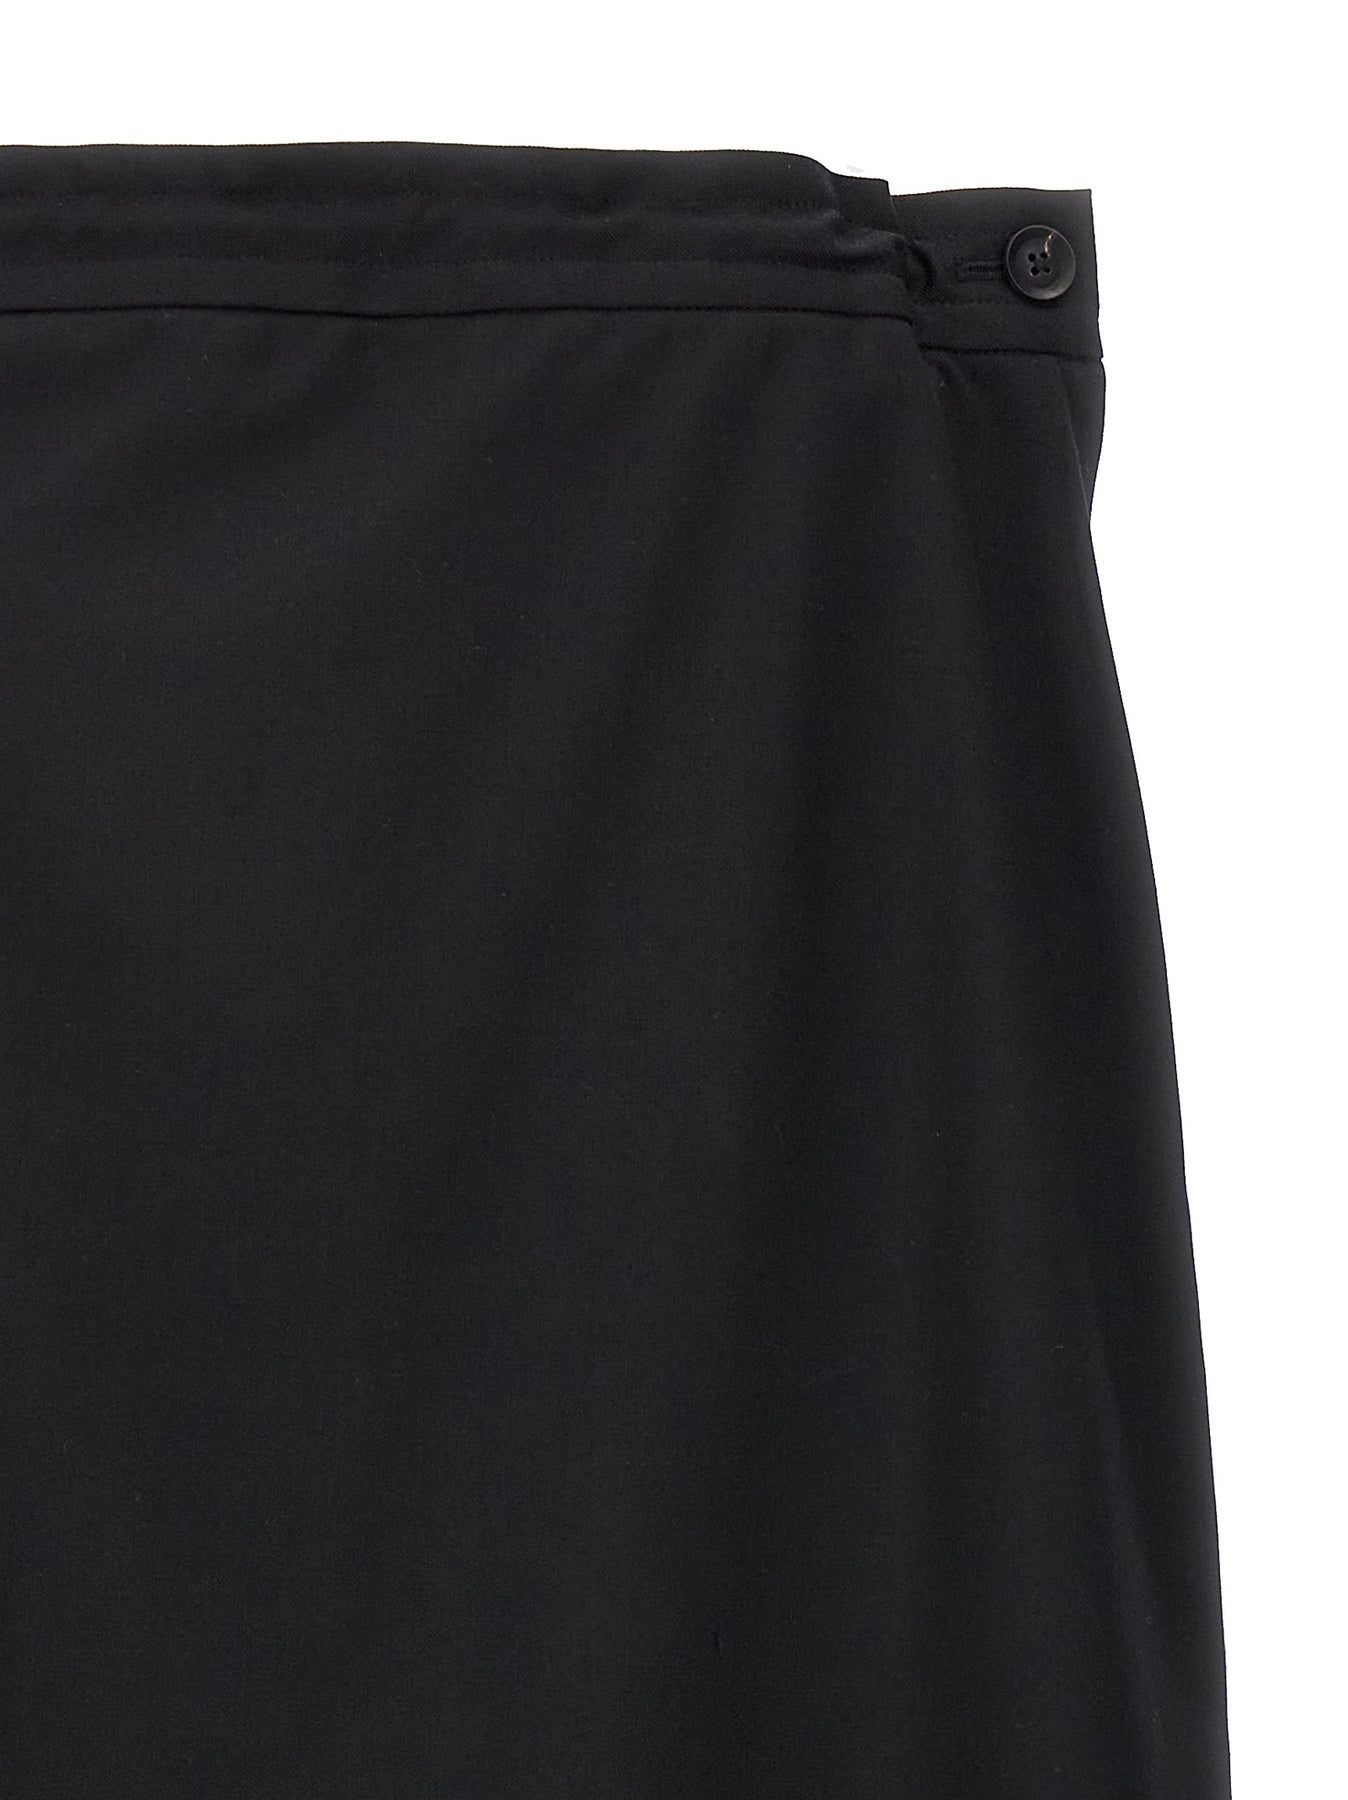 Asymmetrical Skirt Skirts Black - 3